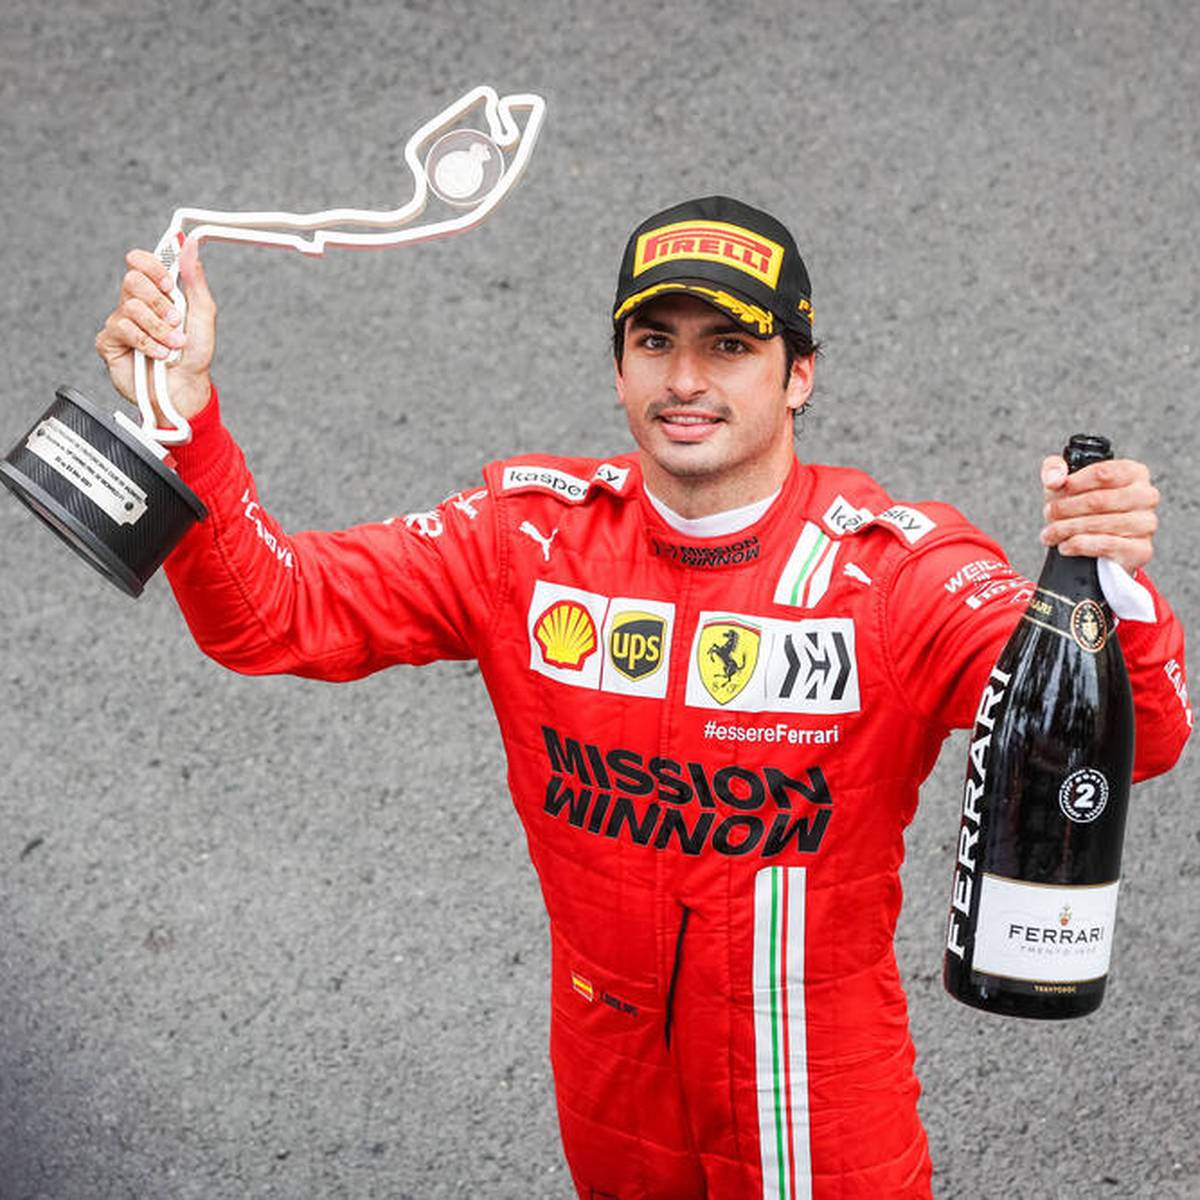 Neben Charles Leclerc fährt Carlos Sainz im Ferrari oftmals unter dem Radar. Dabei hat der Spanier seine Klasse gezeigt. Kann er dieses Jahr sogar um den Titel mitfahren?